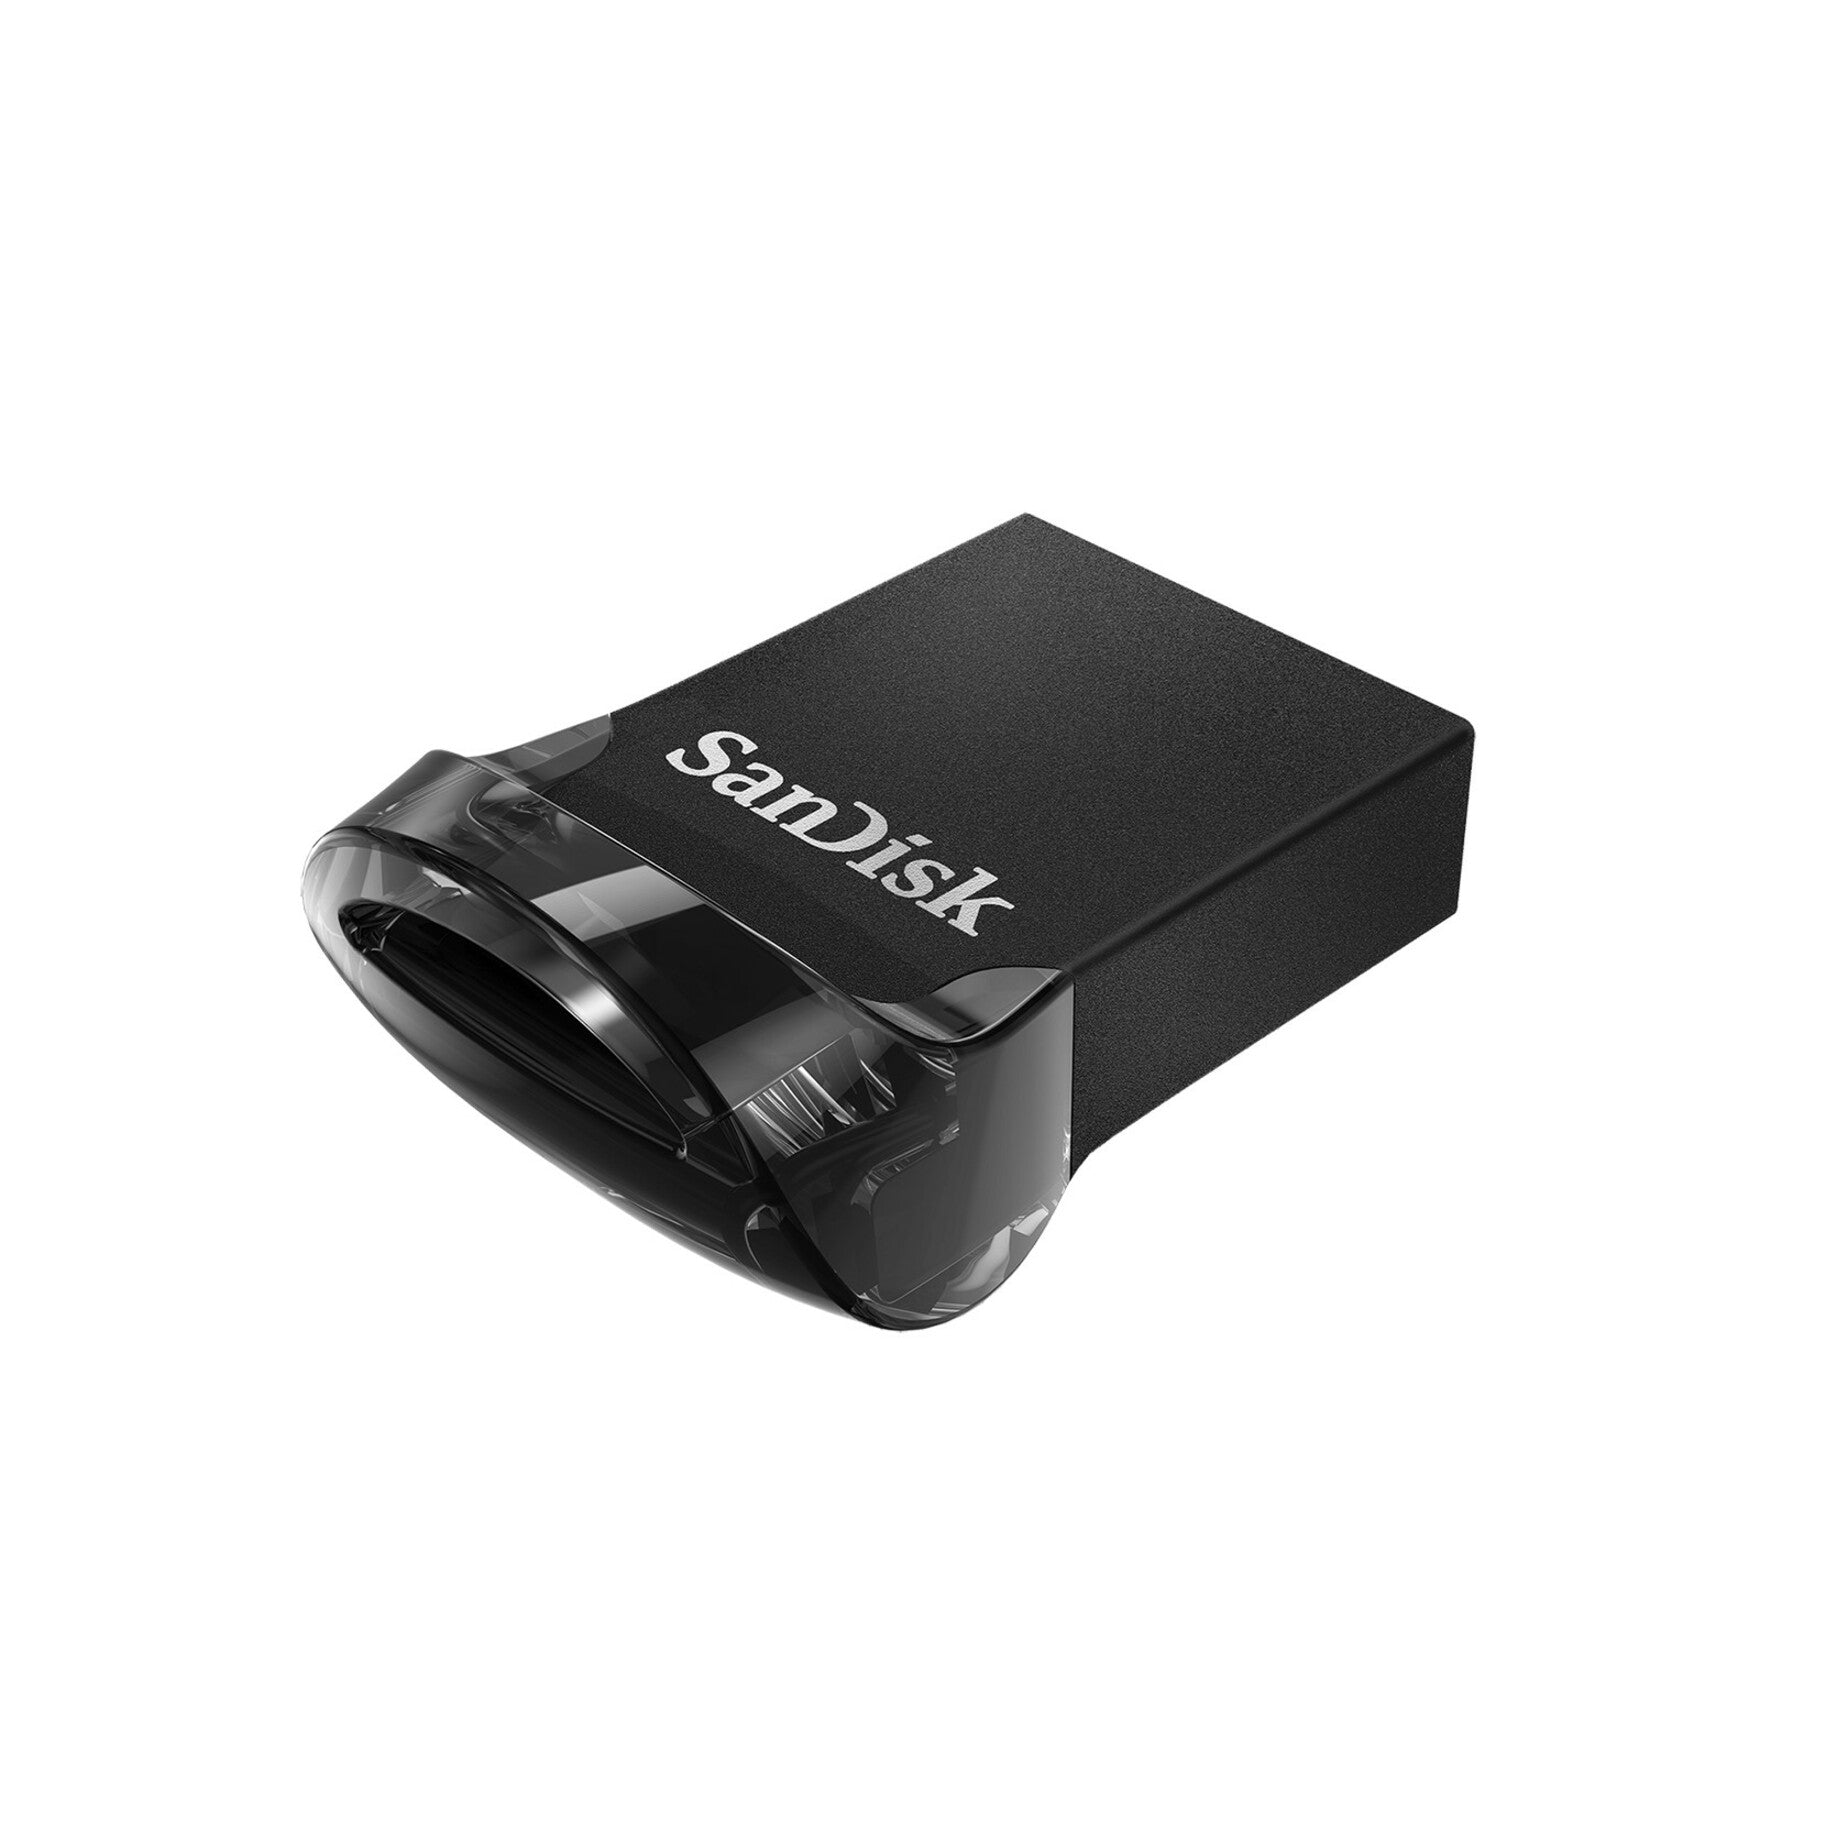 サンディスク SDCZ430-032G-A46 ウルトラ フィット USB 3.1 フラッシュ ドライブ 32GB、高速データ転送とコンパクトなデザイン